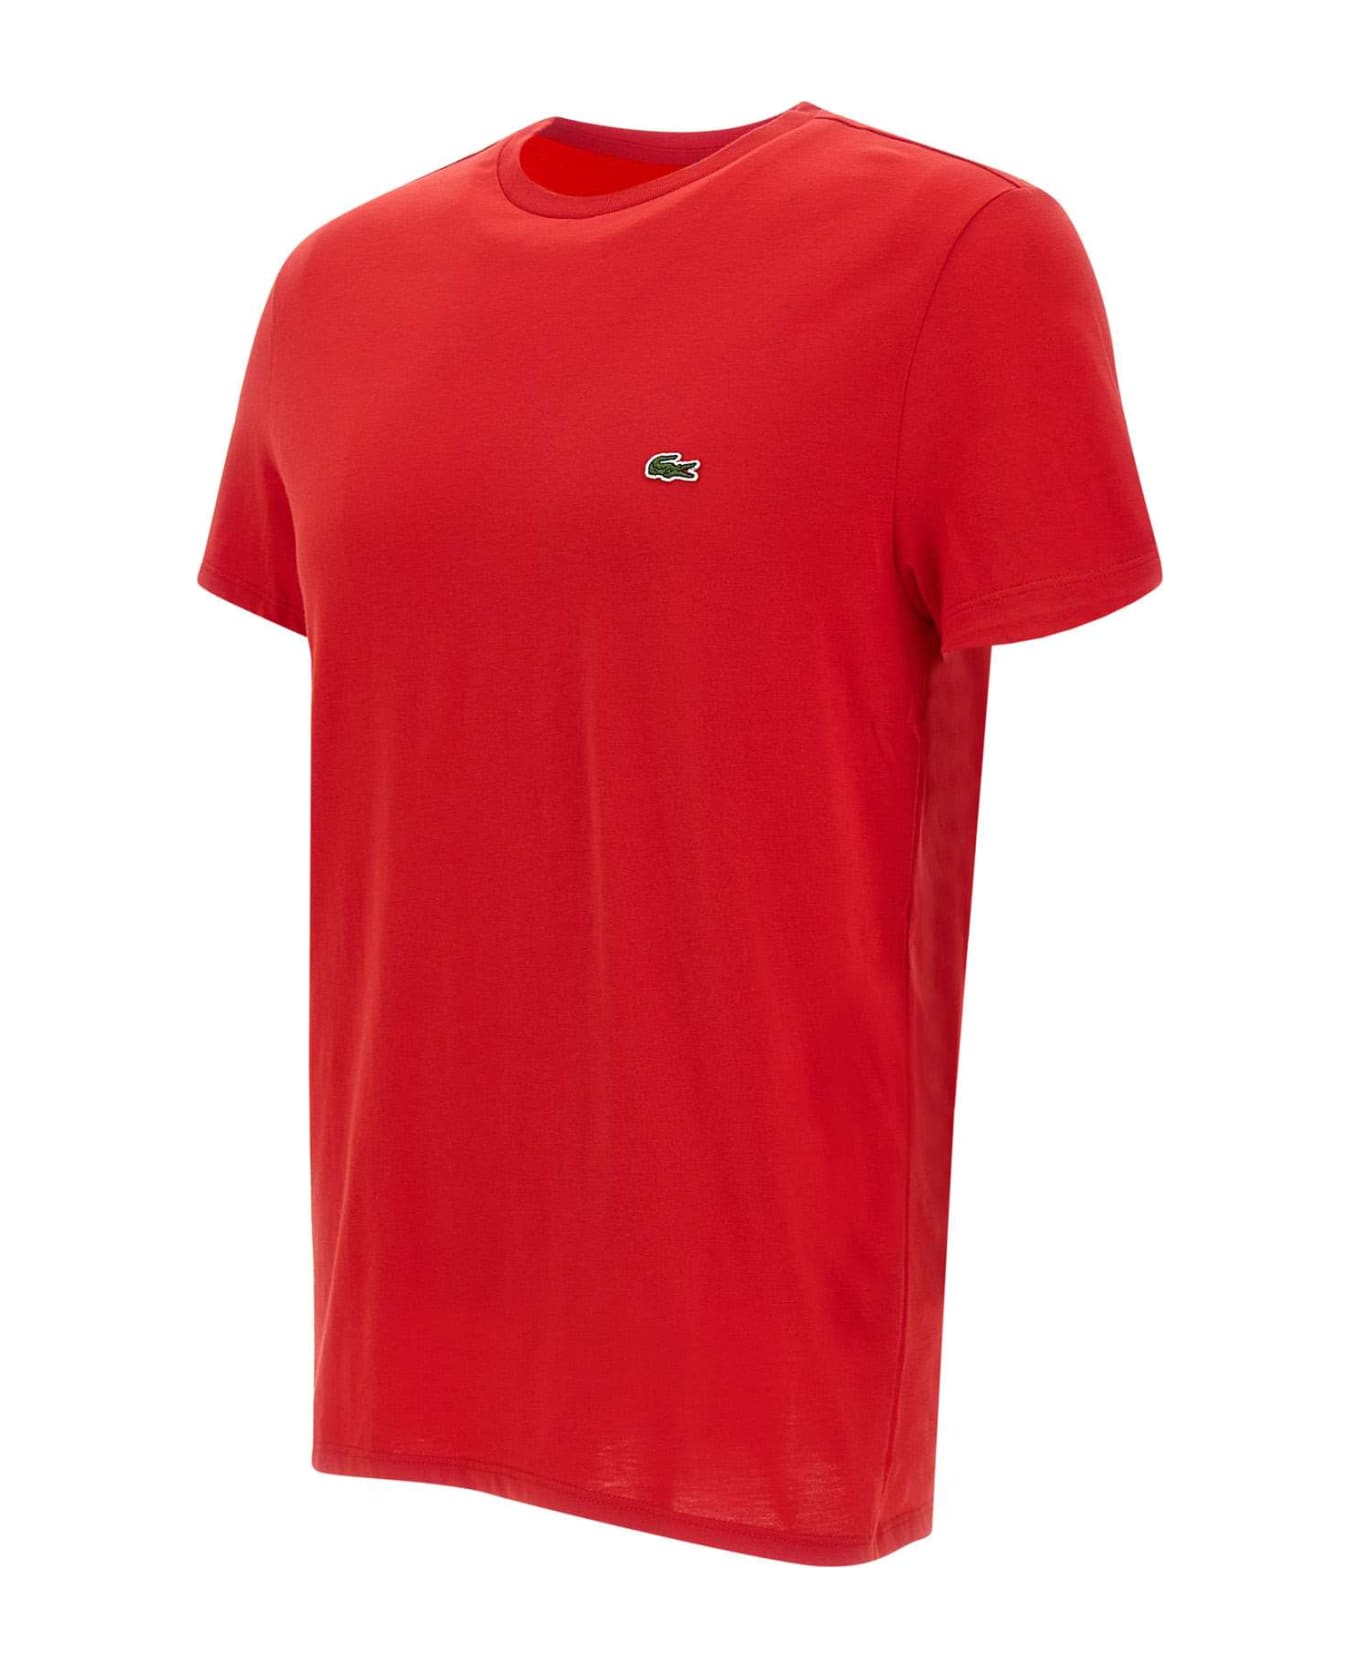 Lacoste Pima Cotton T-shirt - Rosso シャツ